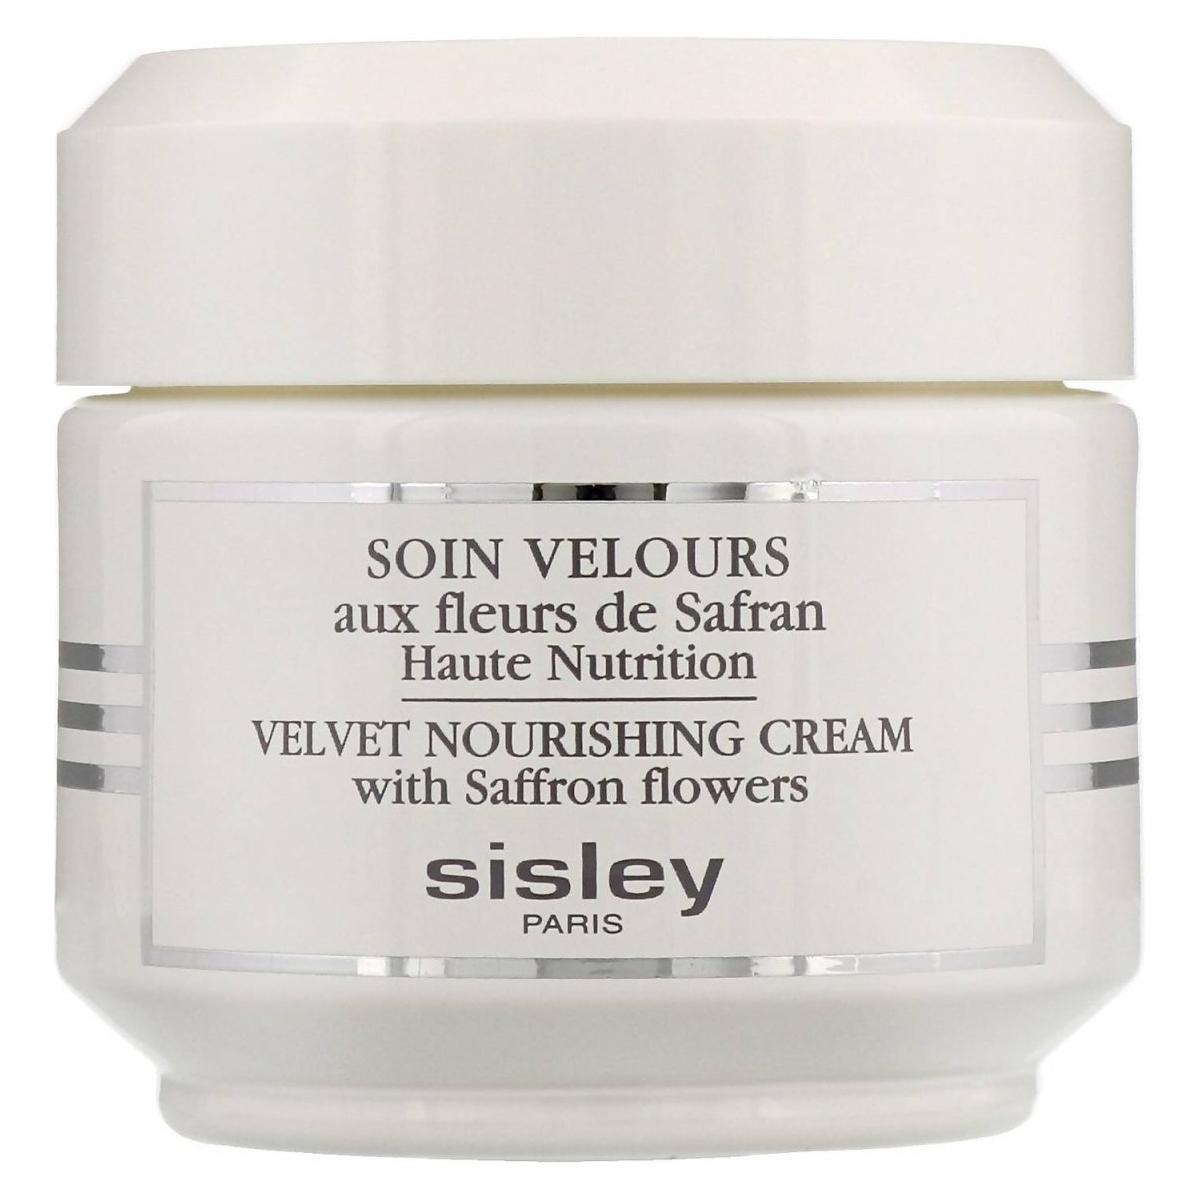 Sisley Velvet Nourishing Cream 50ml - Glam Global UK